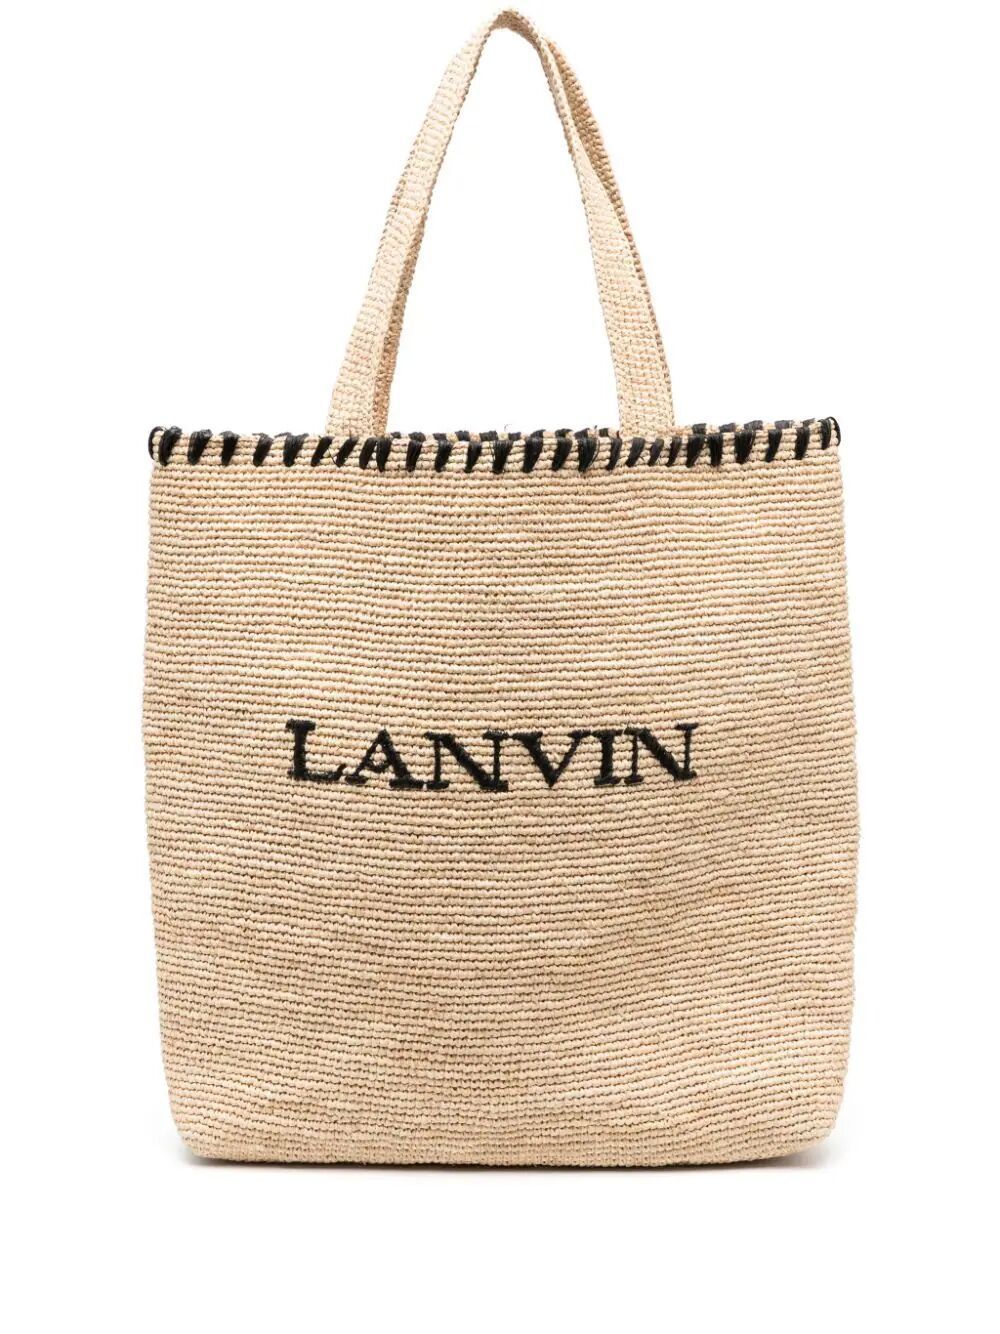 Lanvin Tote Bag In Black